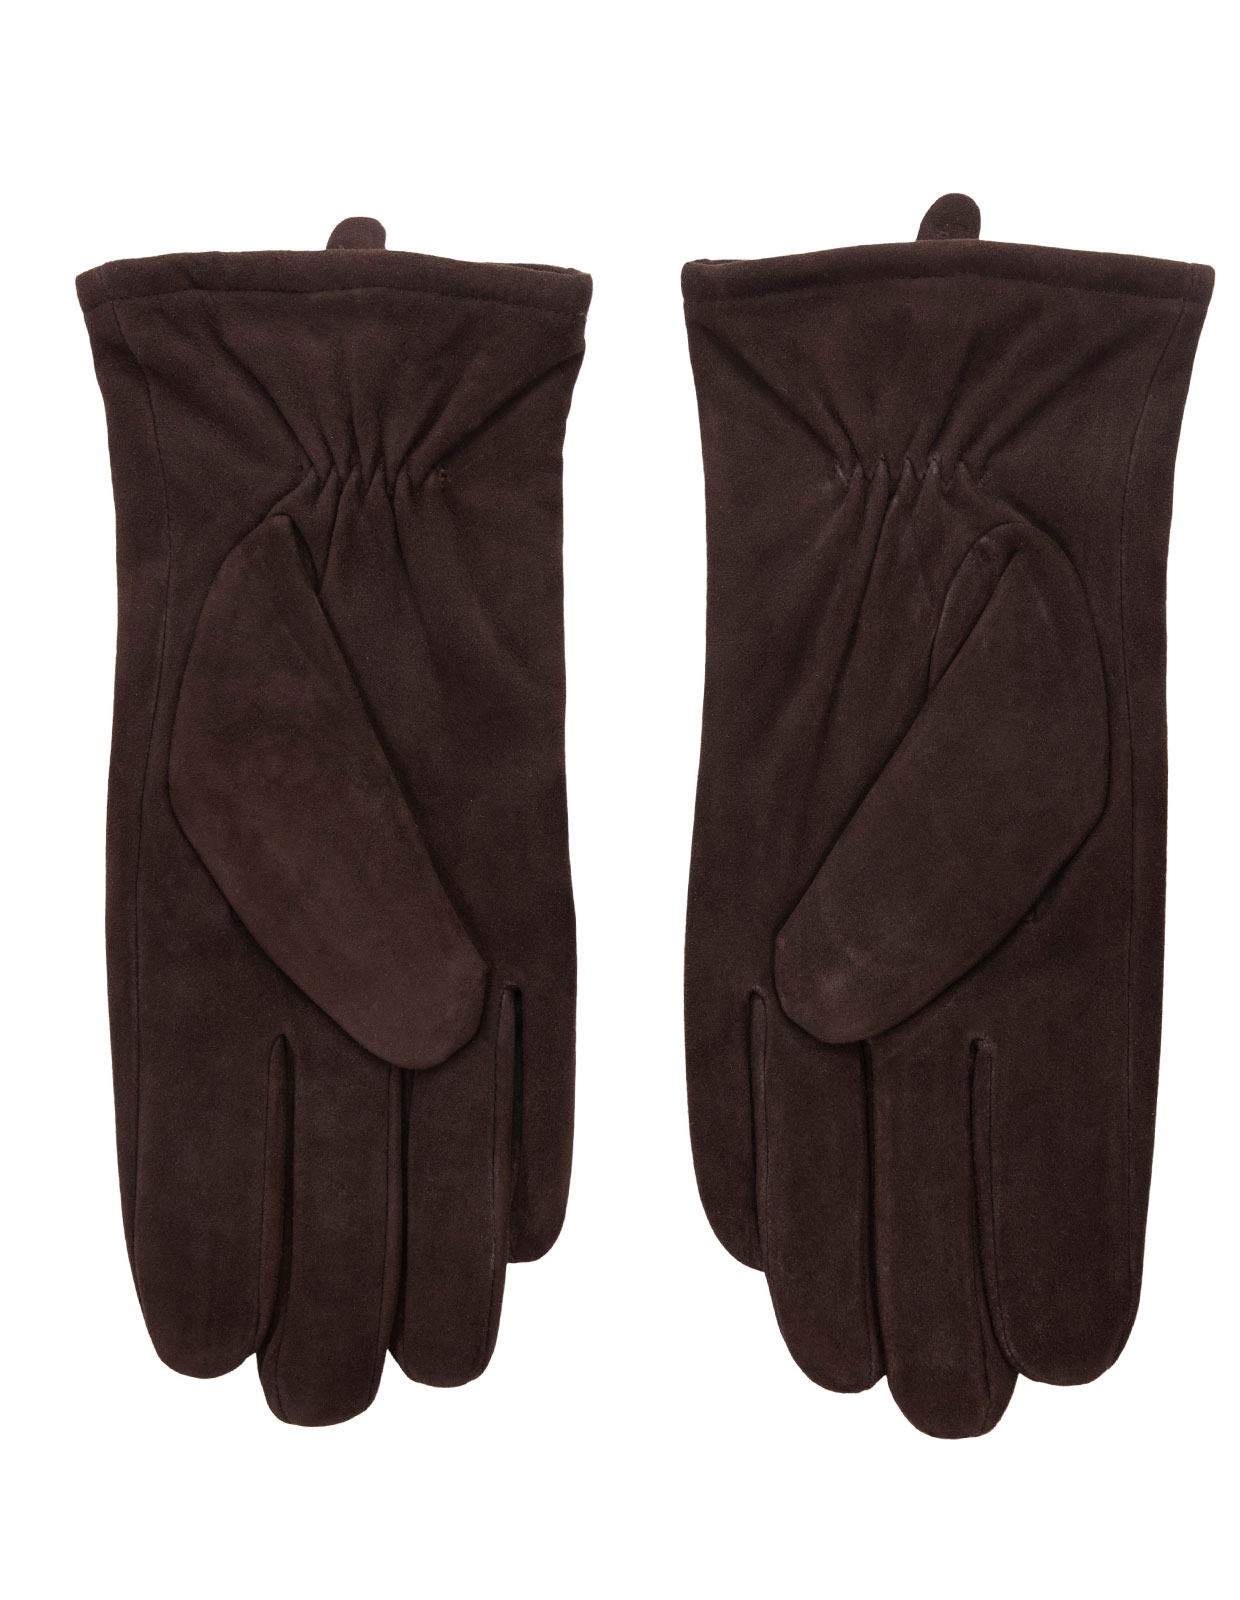 Classic Suede Gloves Dark Brown Stl 9.5